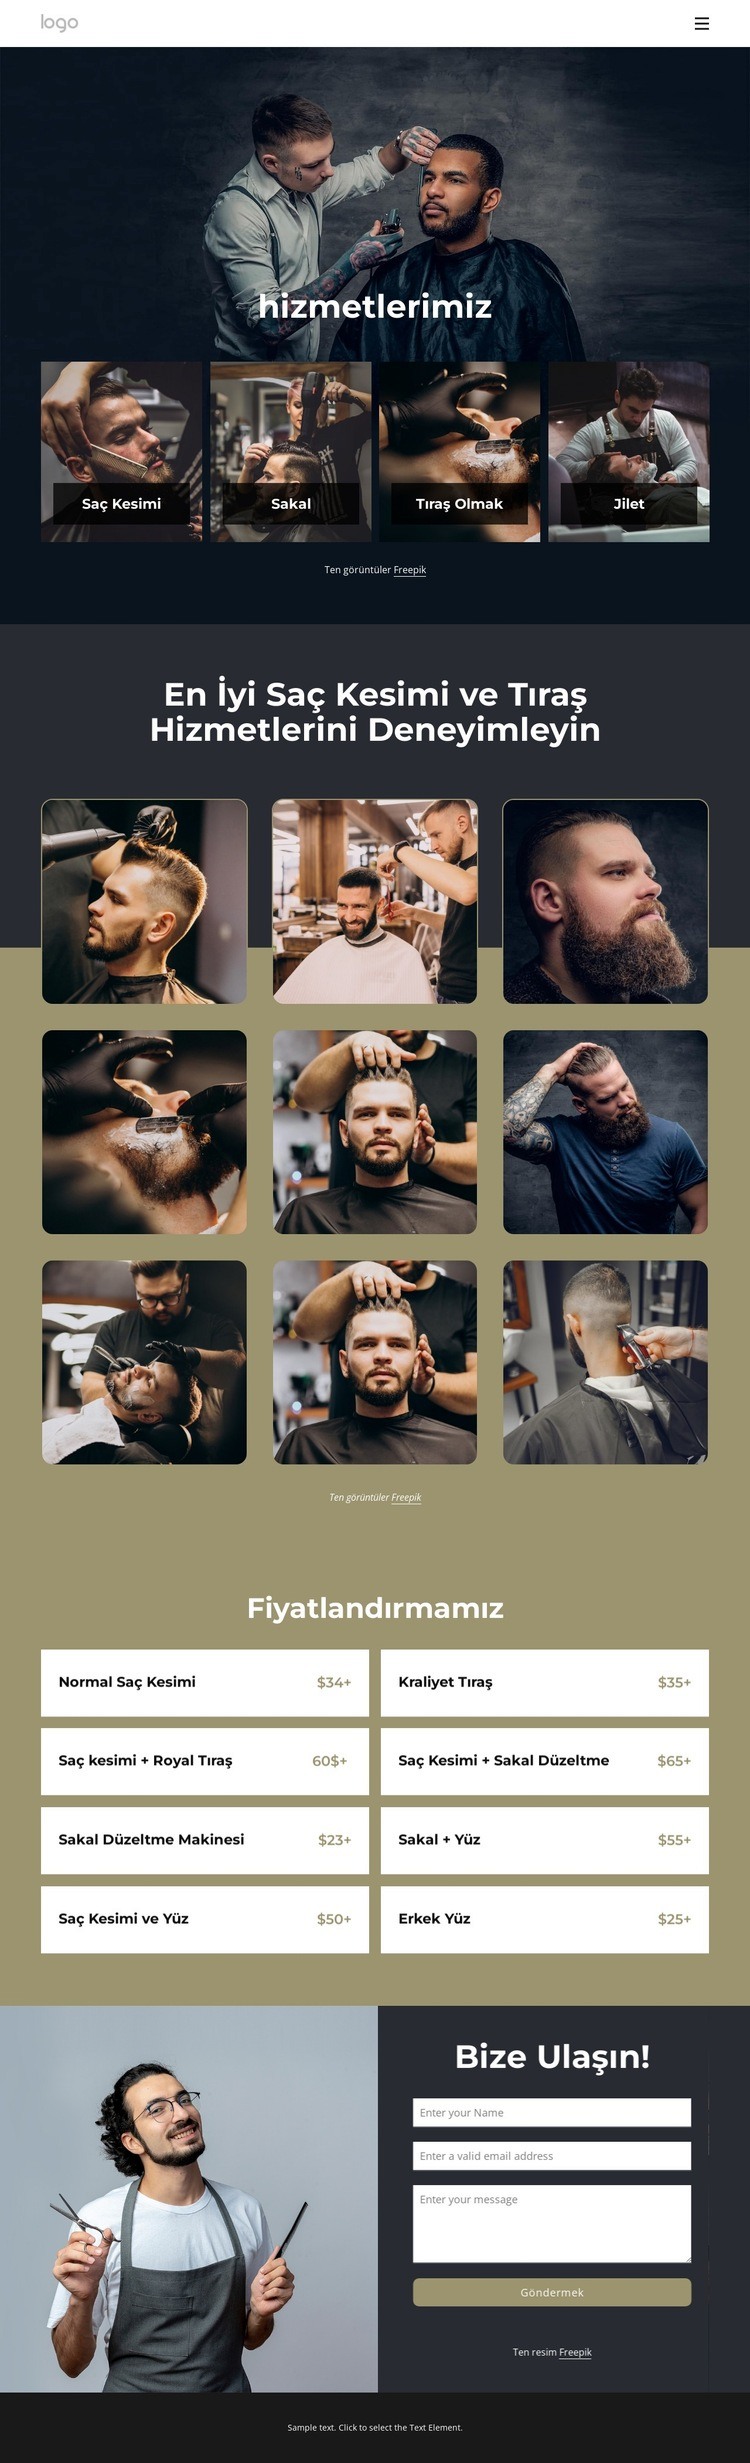 En iyi saç kesimi ve tıraş hizmetleri Web sitesi tasarımı